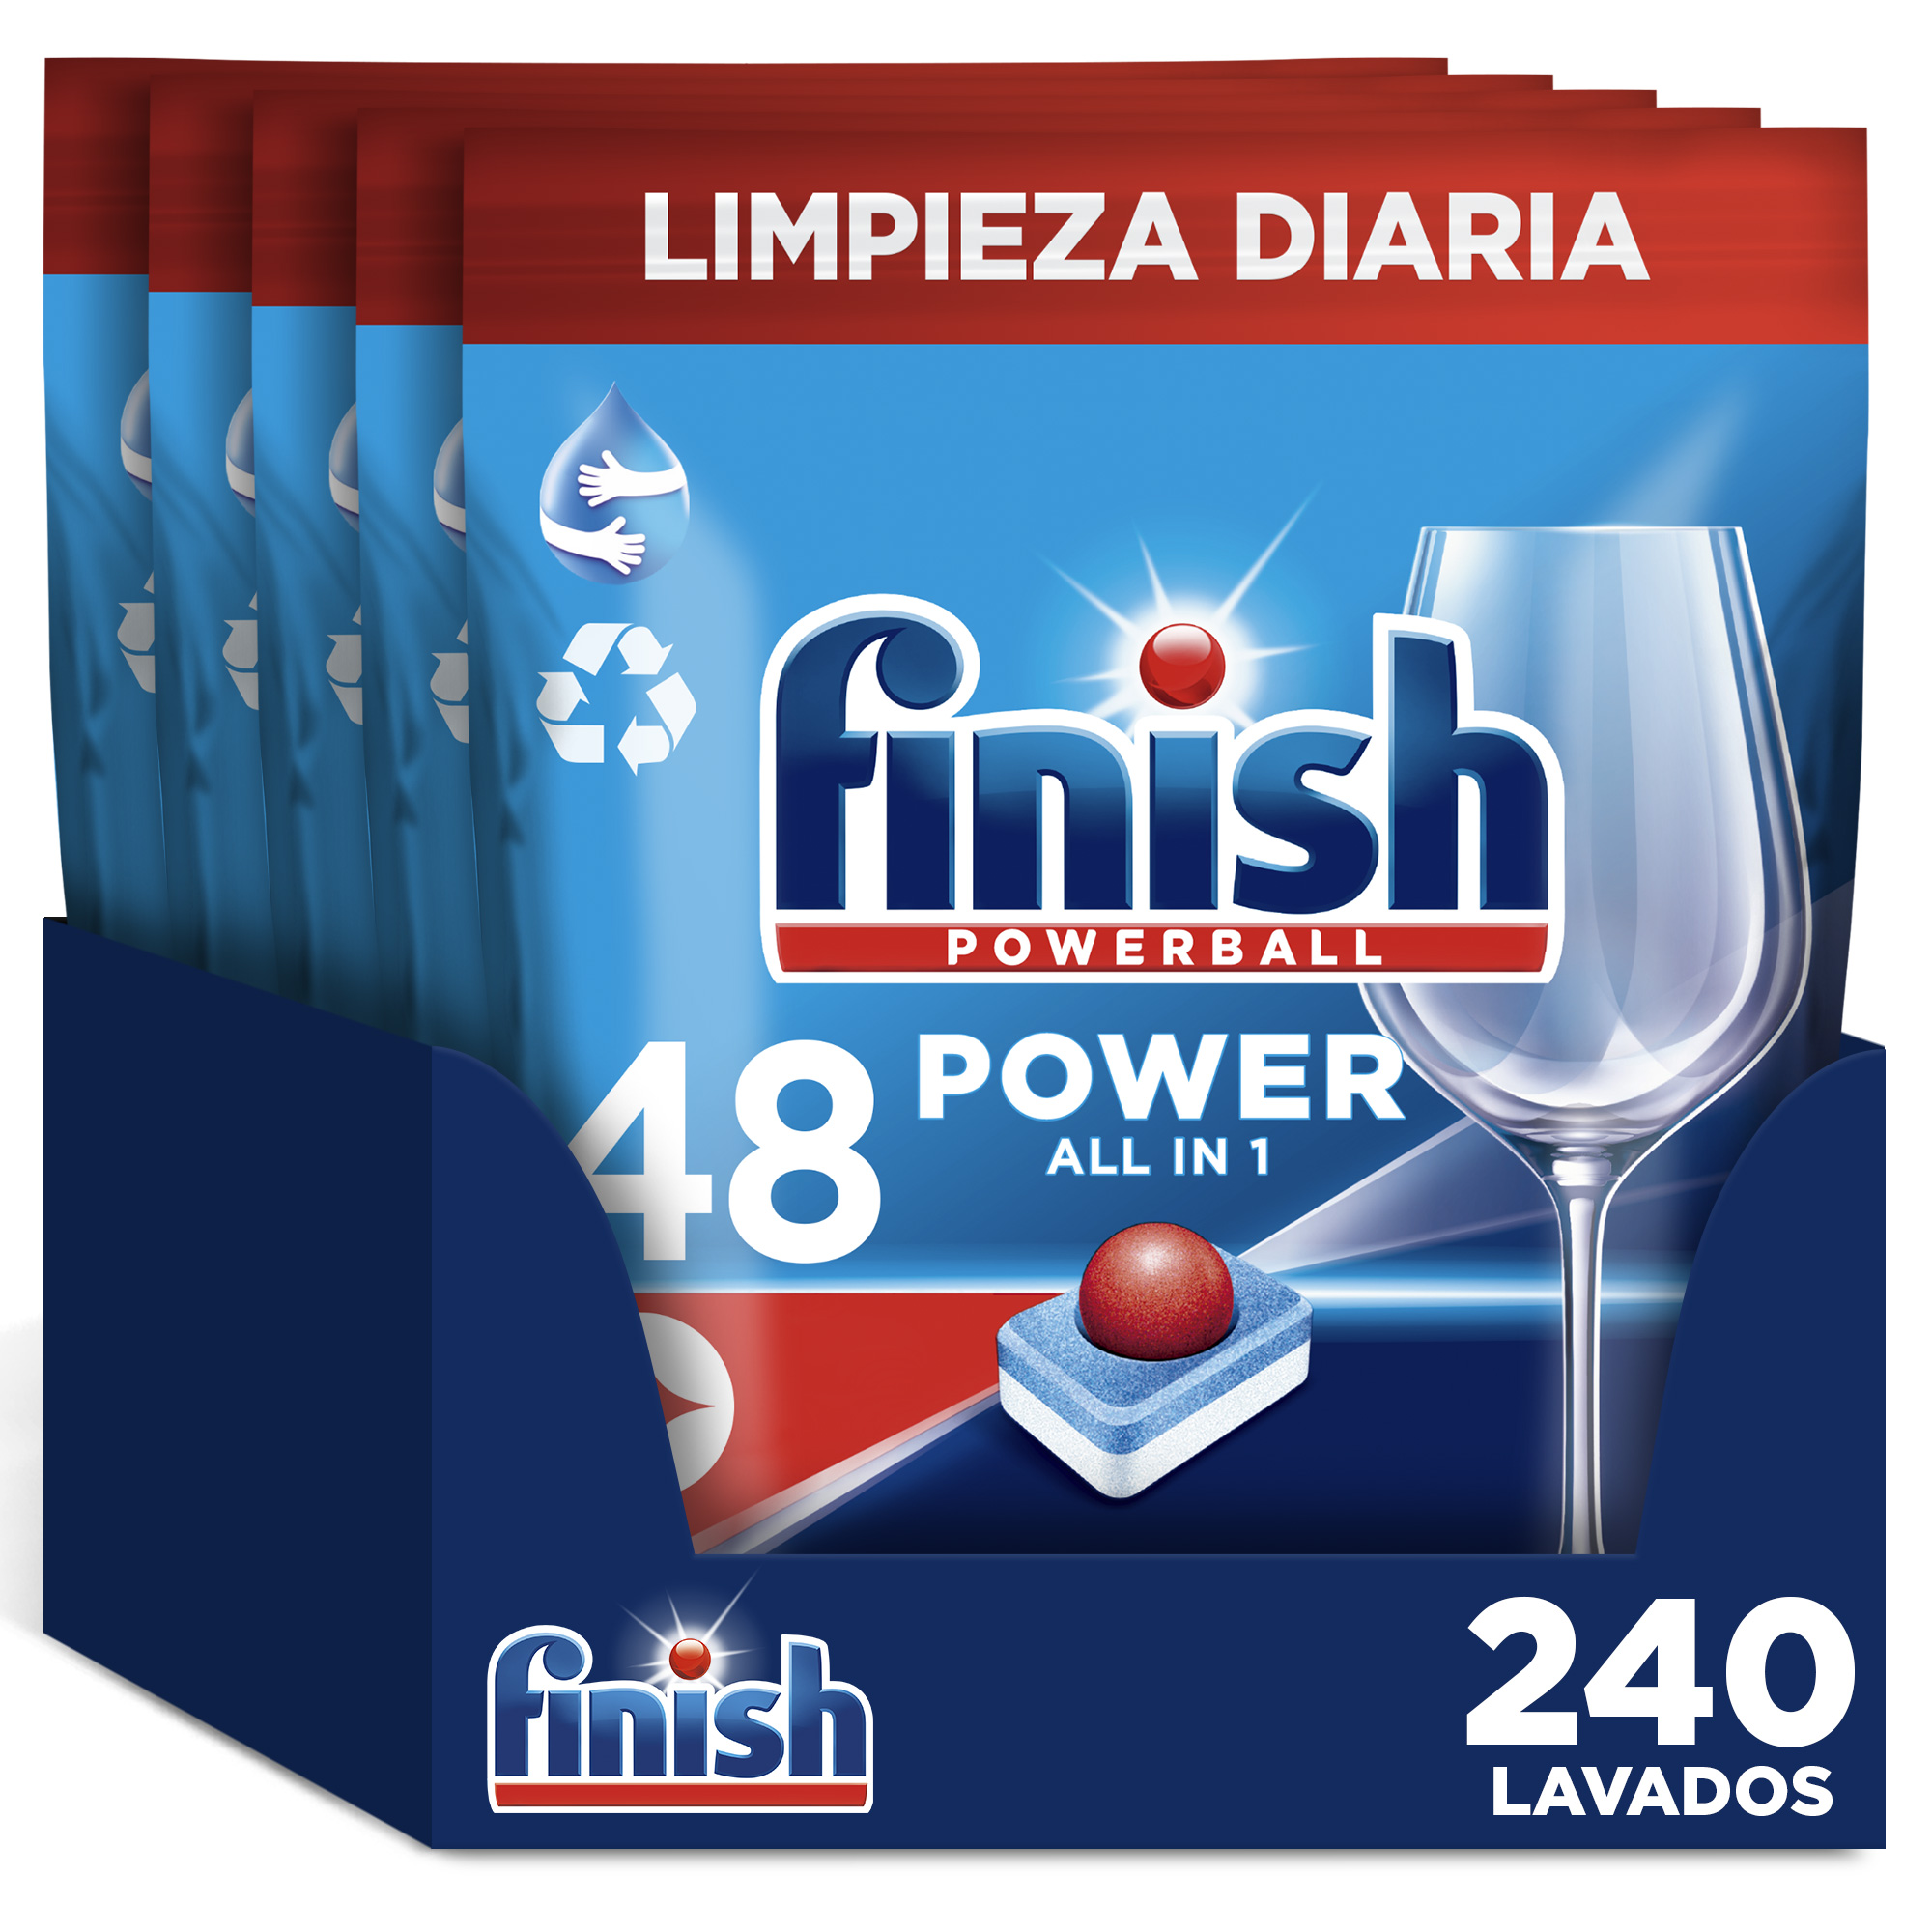 Finish - Finish Poweball Power All in 1 Pastillas para lavavajillas Regular 240 pastillas, Limpieza y Brillo Diario